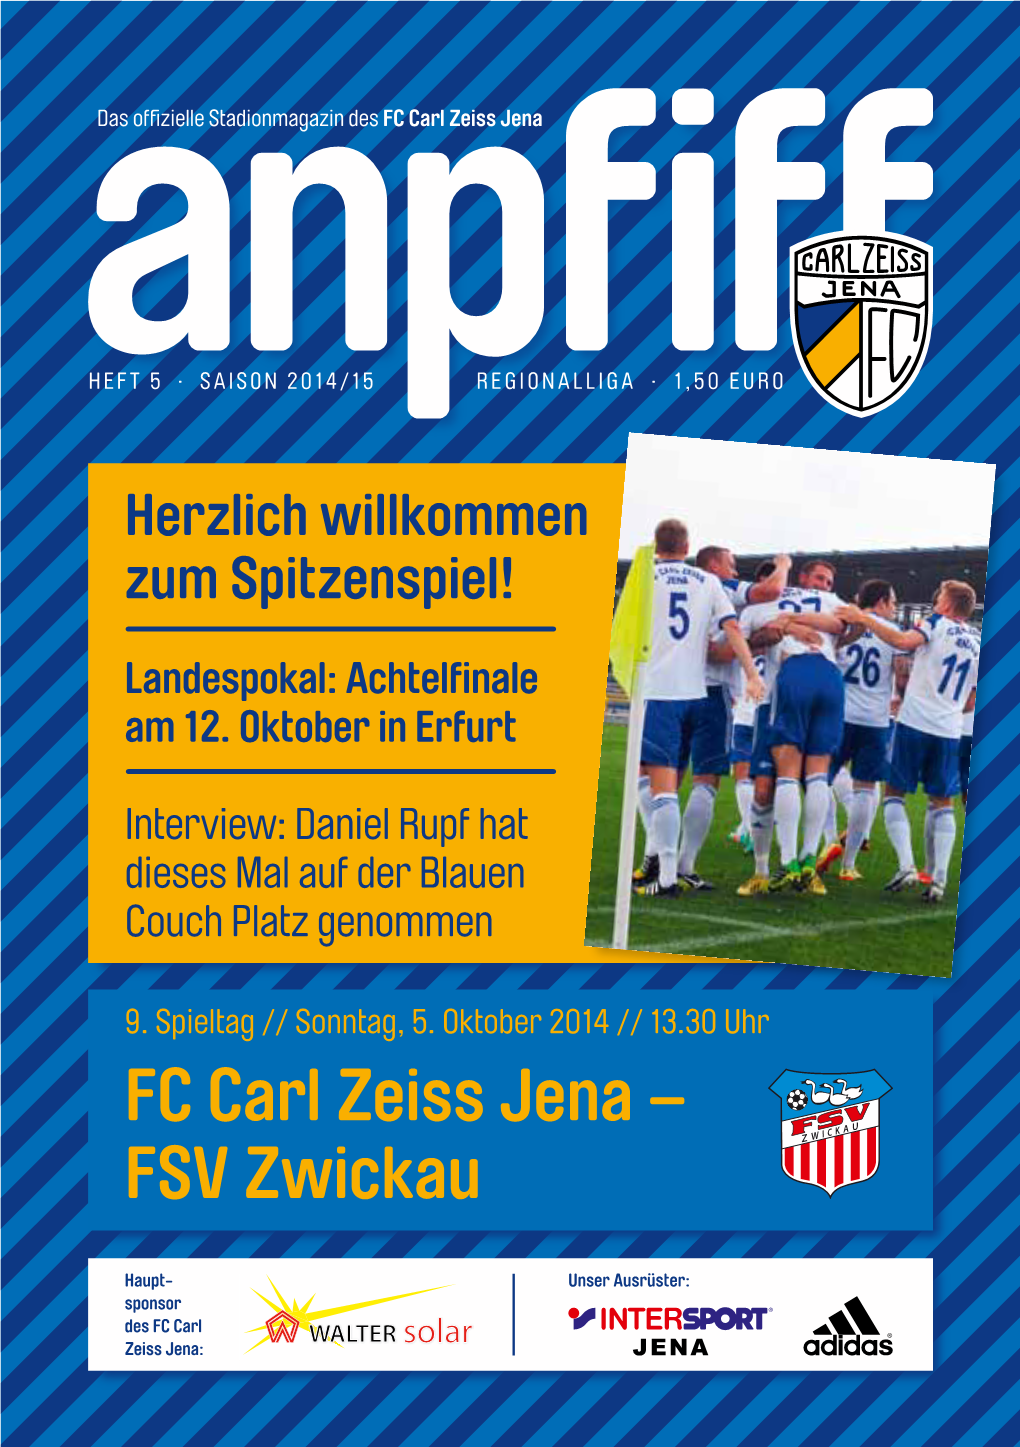 FC Carl Zeiss Jena – FSV Zwickau